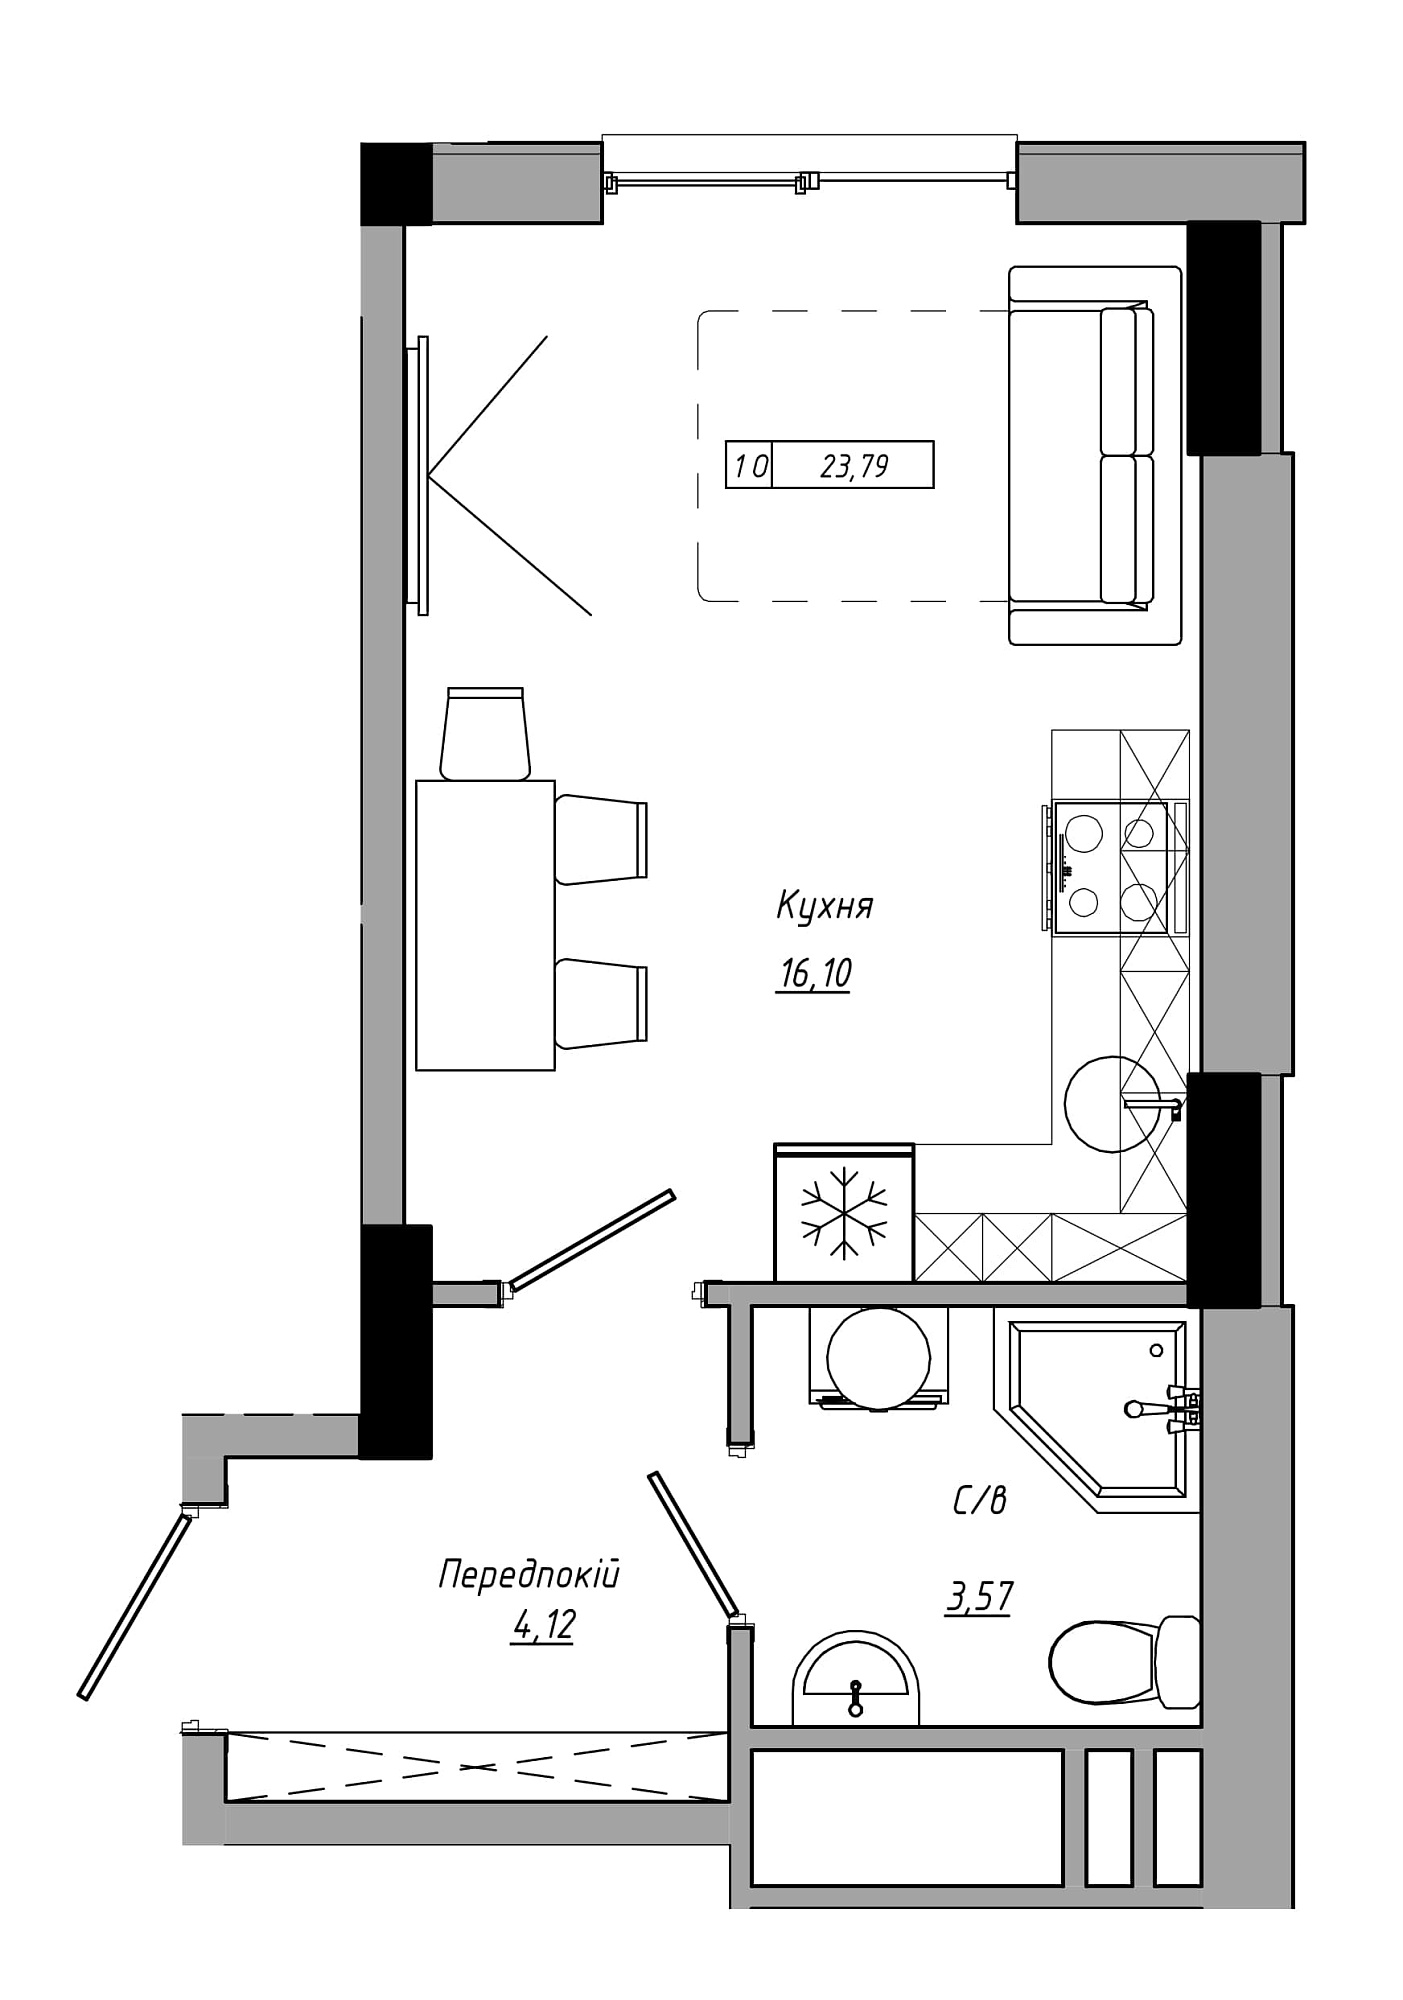 Планування Smart-квартира площею 23.79м2, AB-21-09/00017.